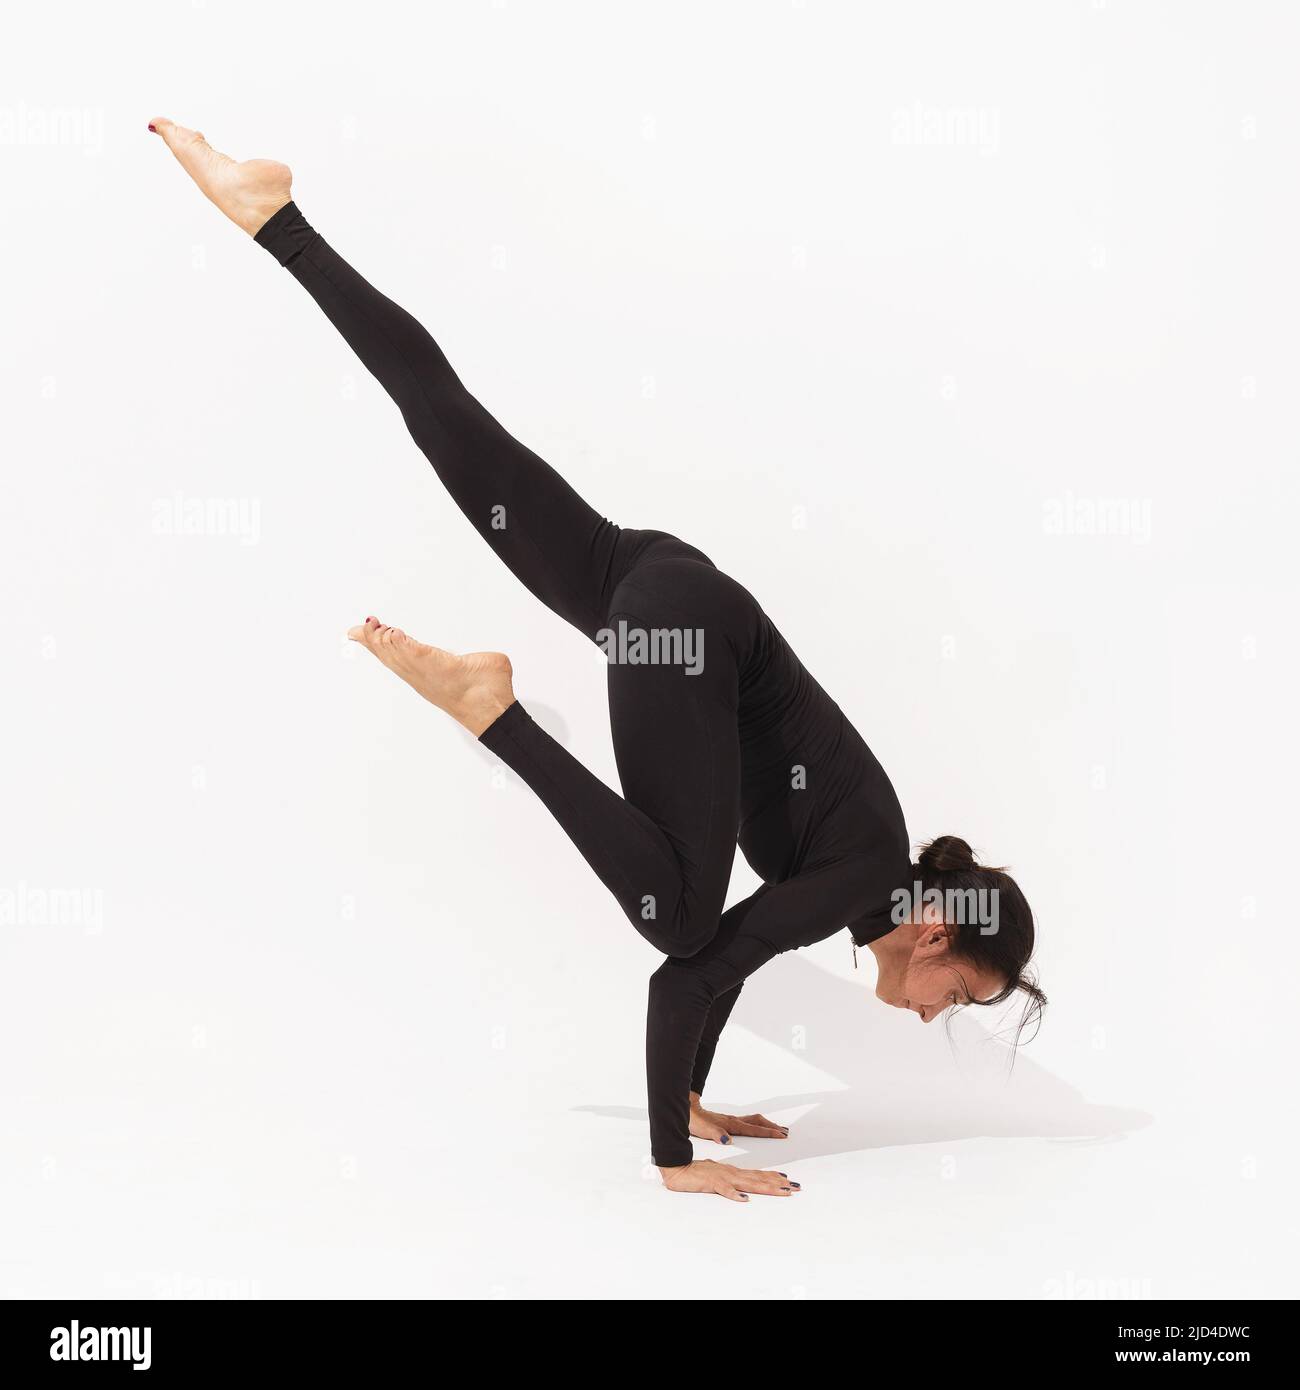 Frau, die Yoga praktiziert, führt die Übung Eka Pada Bakasana durch, Kranstellung mit ausgestrecktem Bein, Training in schwarzer Sportkleidung auf weißem Hintergrund Stockfoto